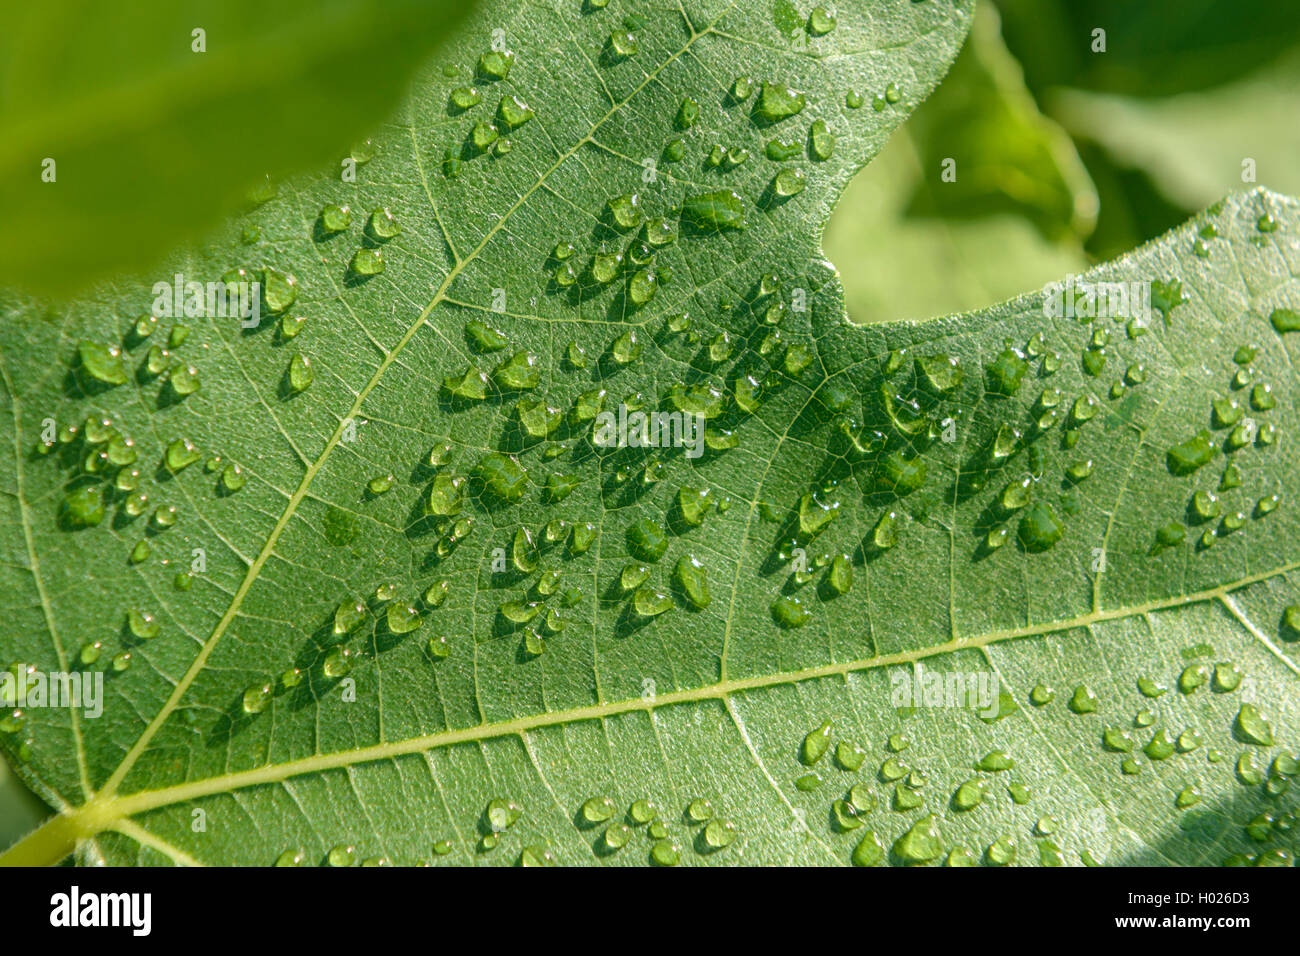 Higo, higos, Figtree común (Ficus carica), la gota de agua sobre una hoja de parra Foto de stock